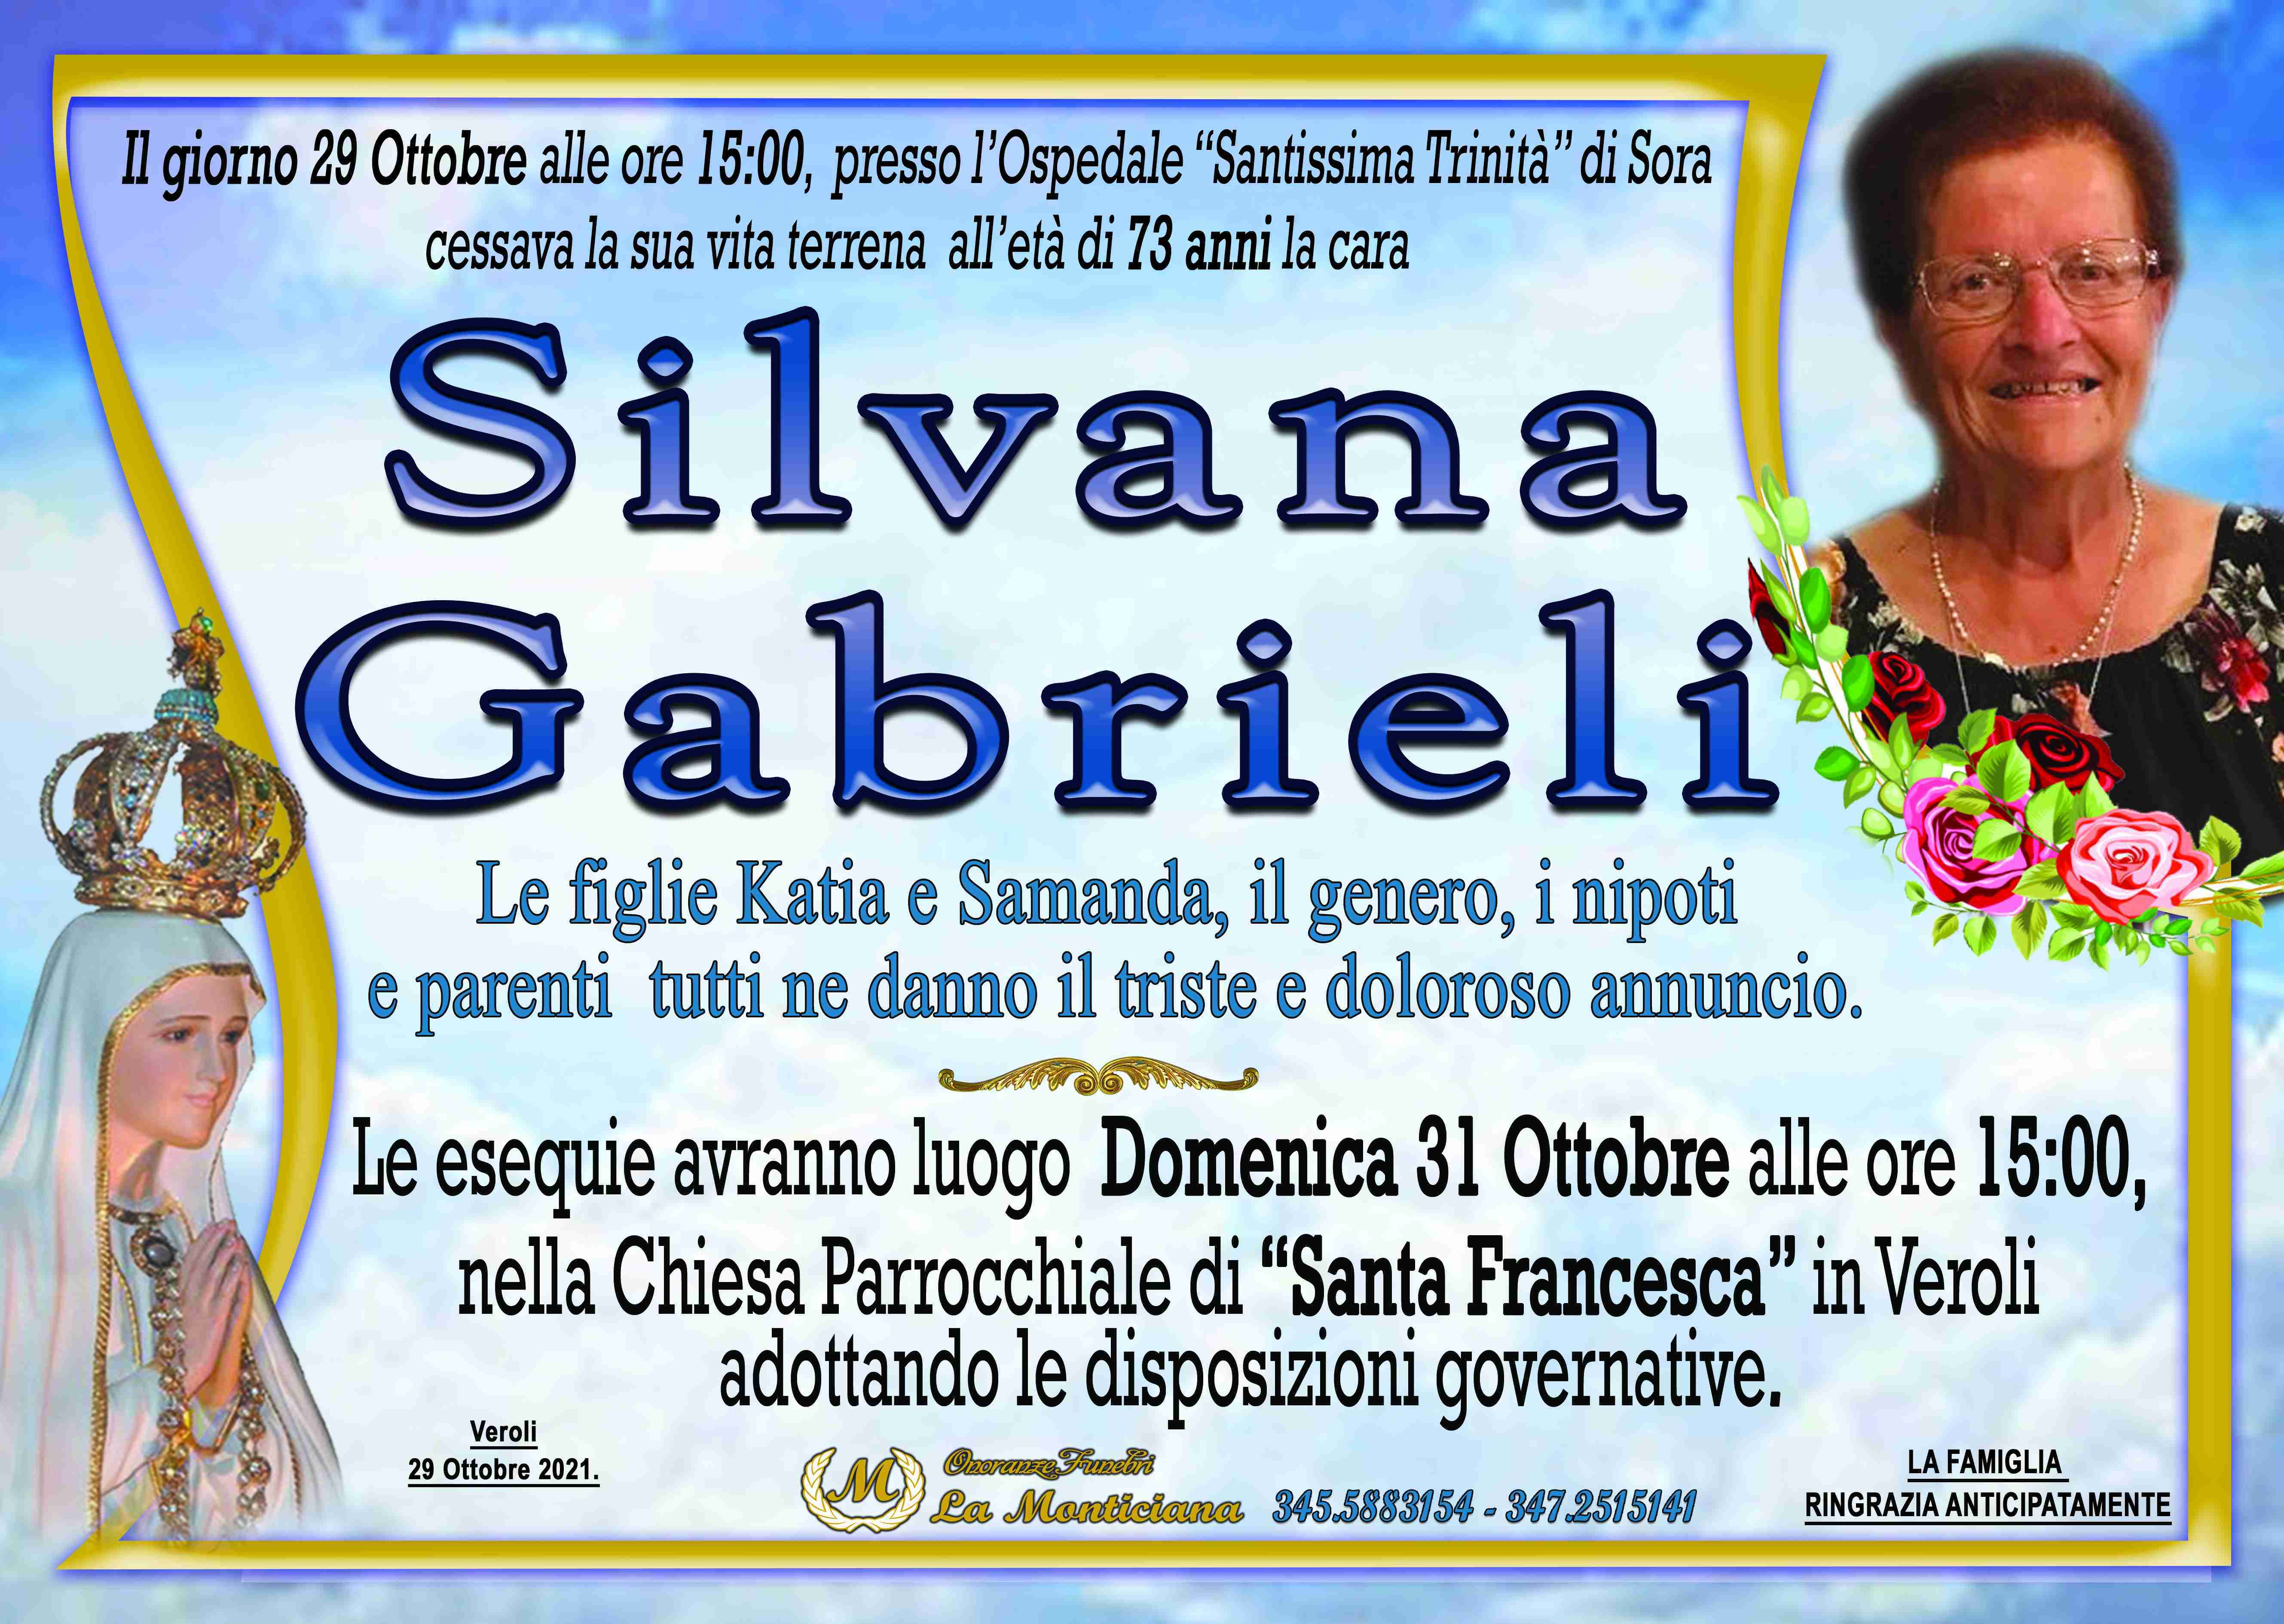 Silvana Gabrieli